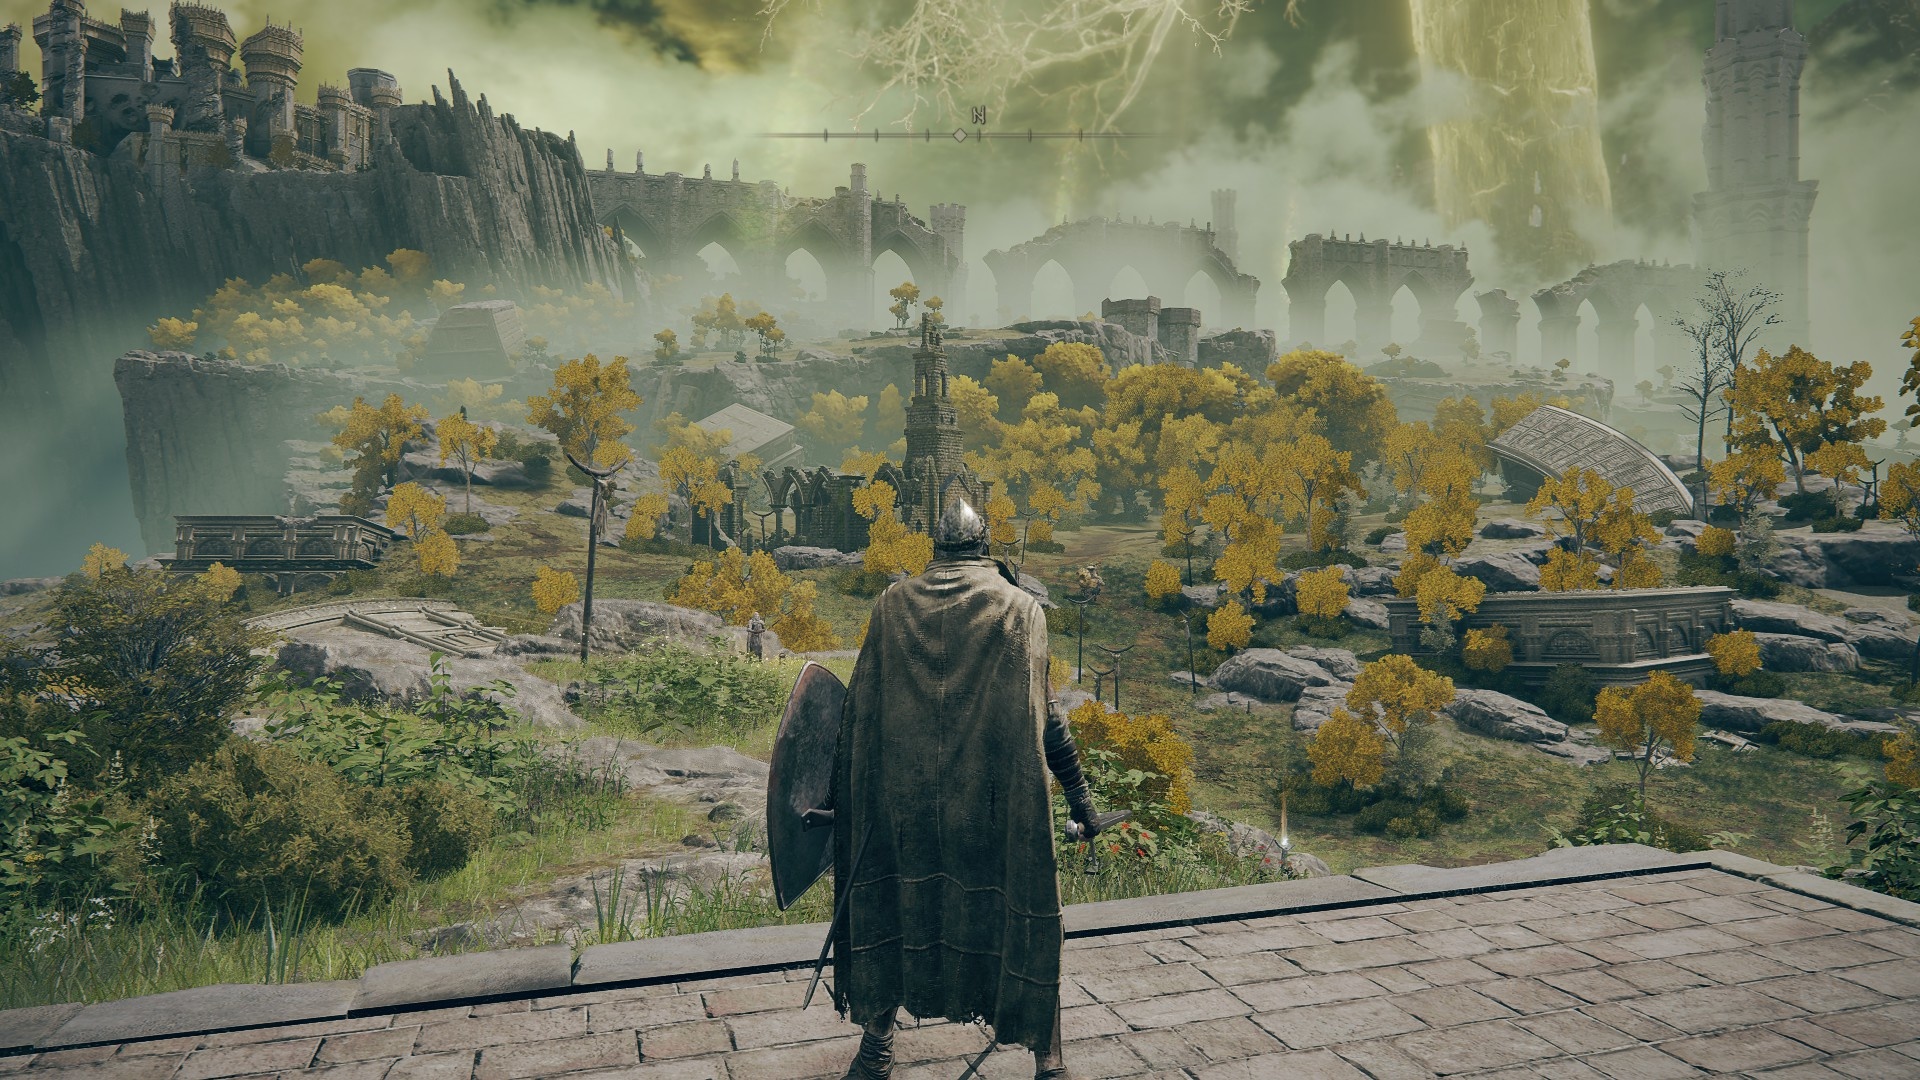 即使是在游戏开始时对第一个地区Limgrave的一瞥，也会发现许多有趣的地点和细节，如一个金色的骑士在风景中游荡，或者一个破旧的教堂可能隐藏着有用的东西。